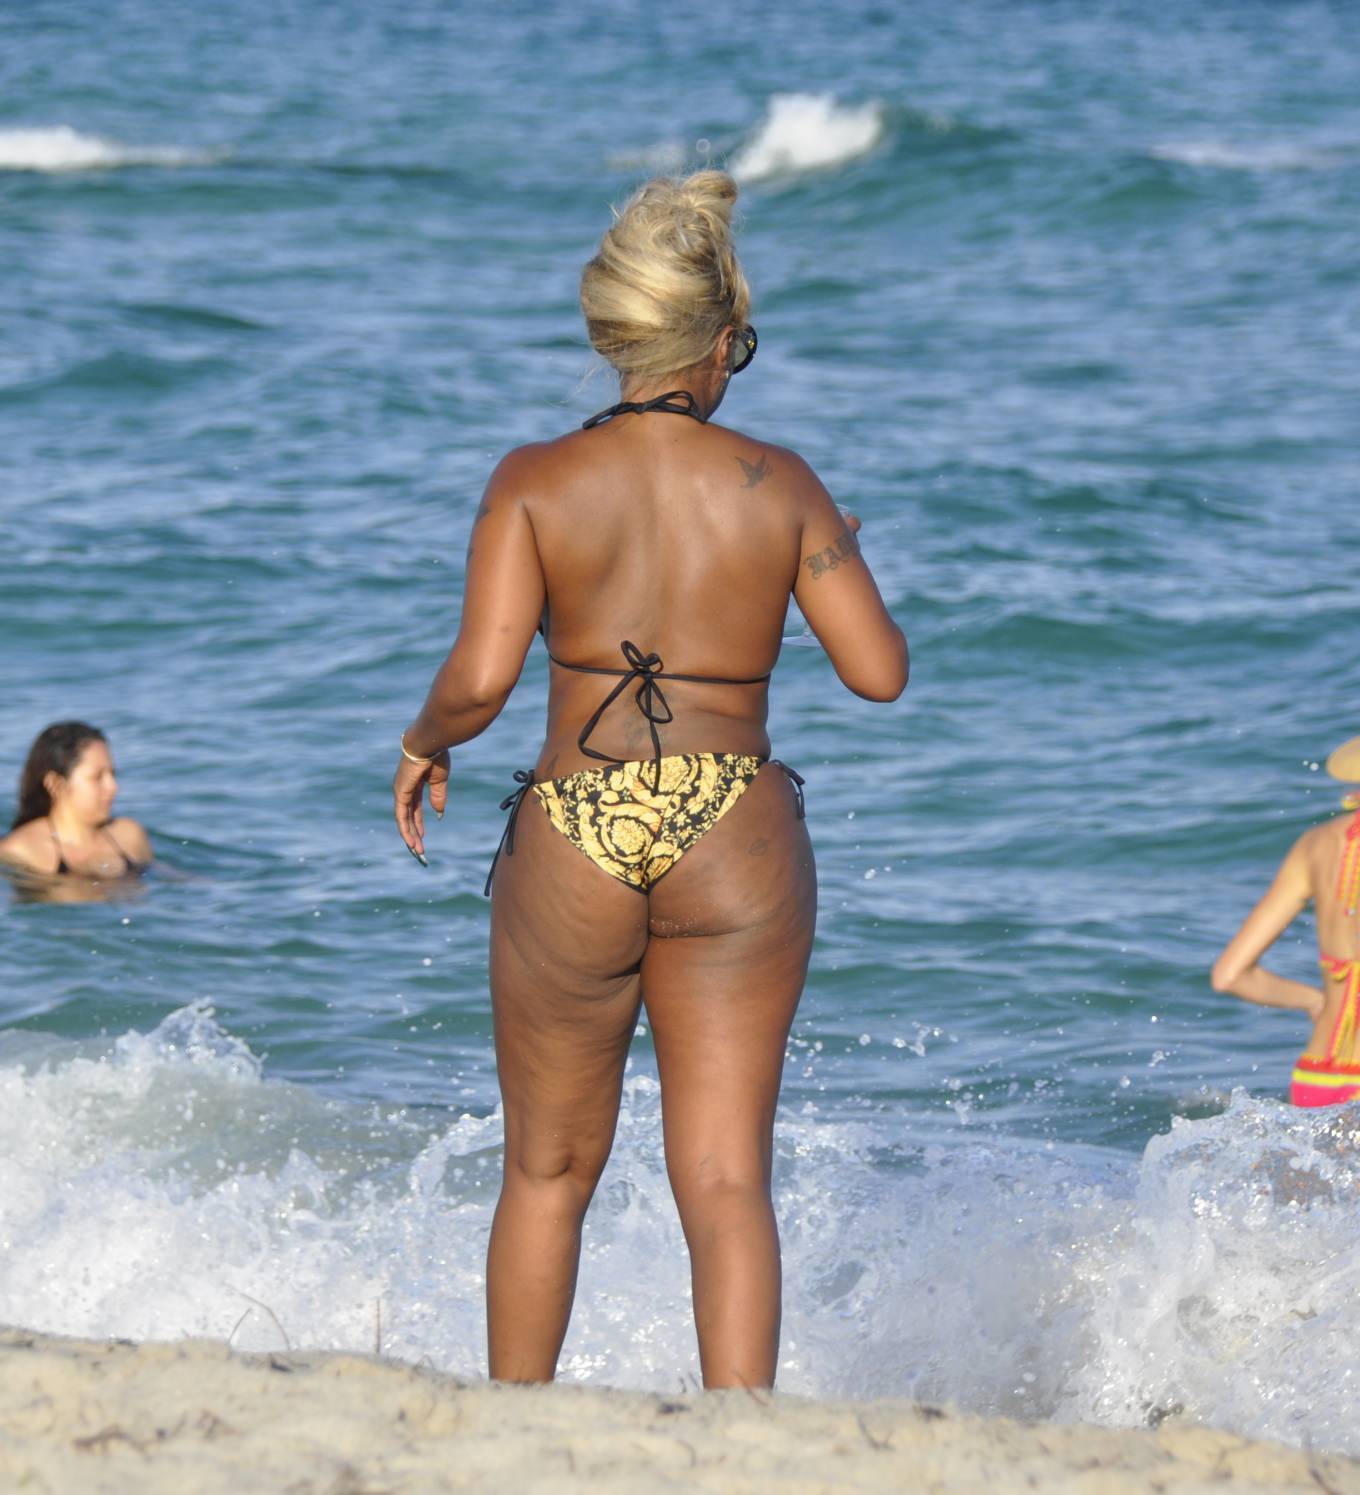 Mary J. Blige hits the beach in bejeweled blue bikini